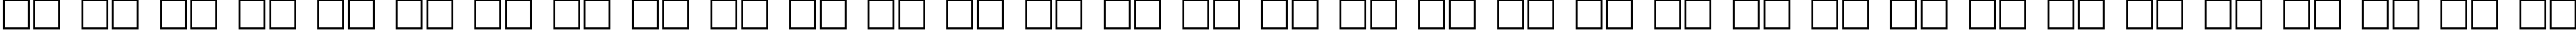 Пример написания русского алфавита шрифтом Micra